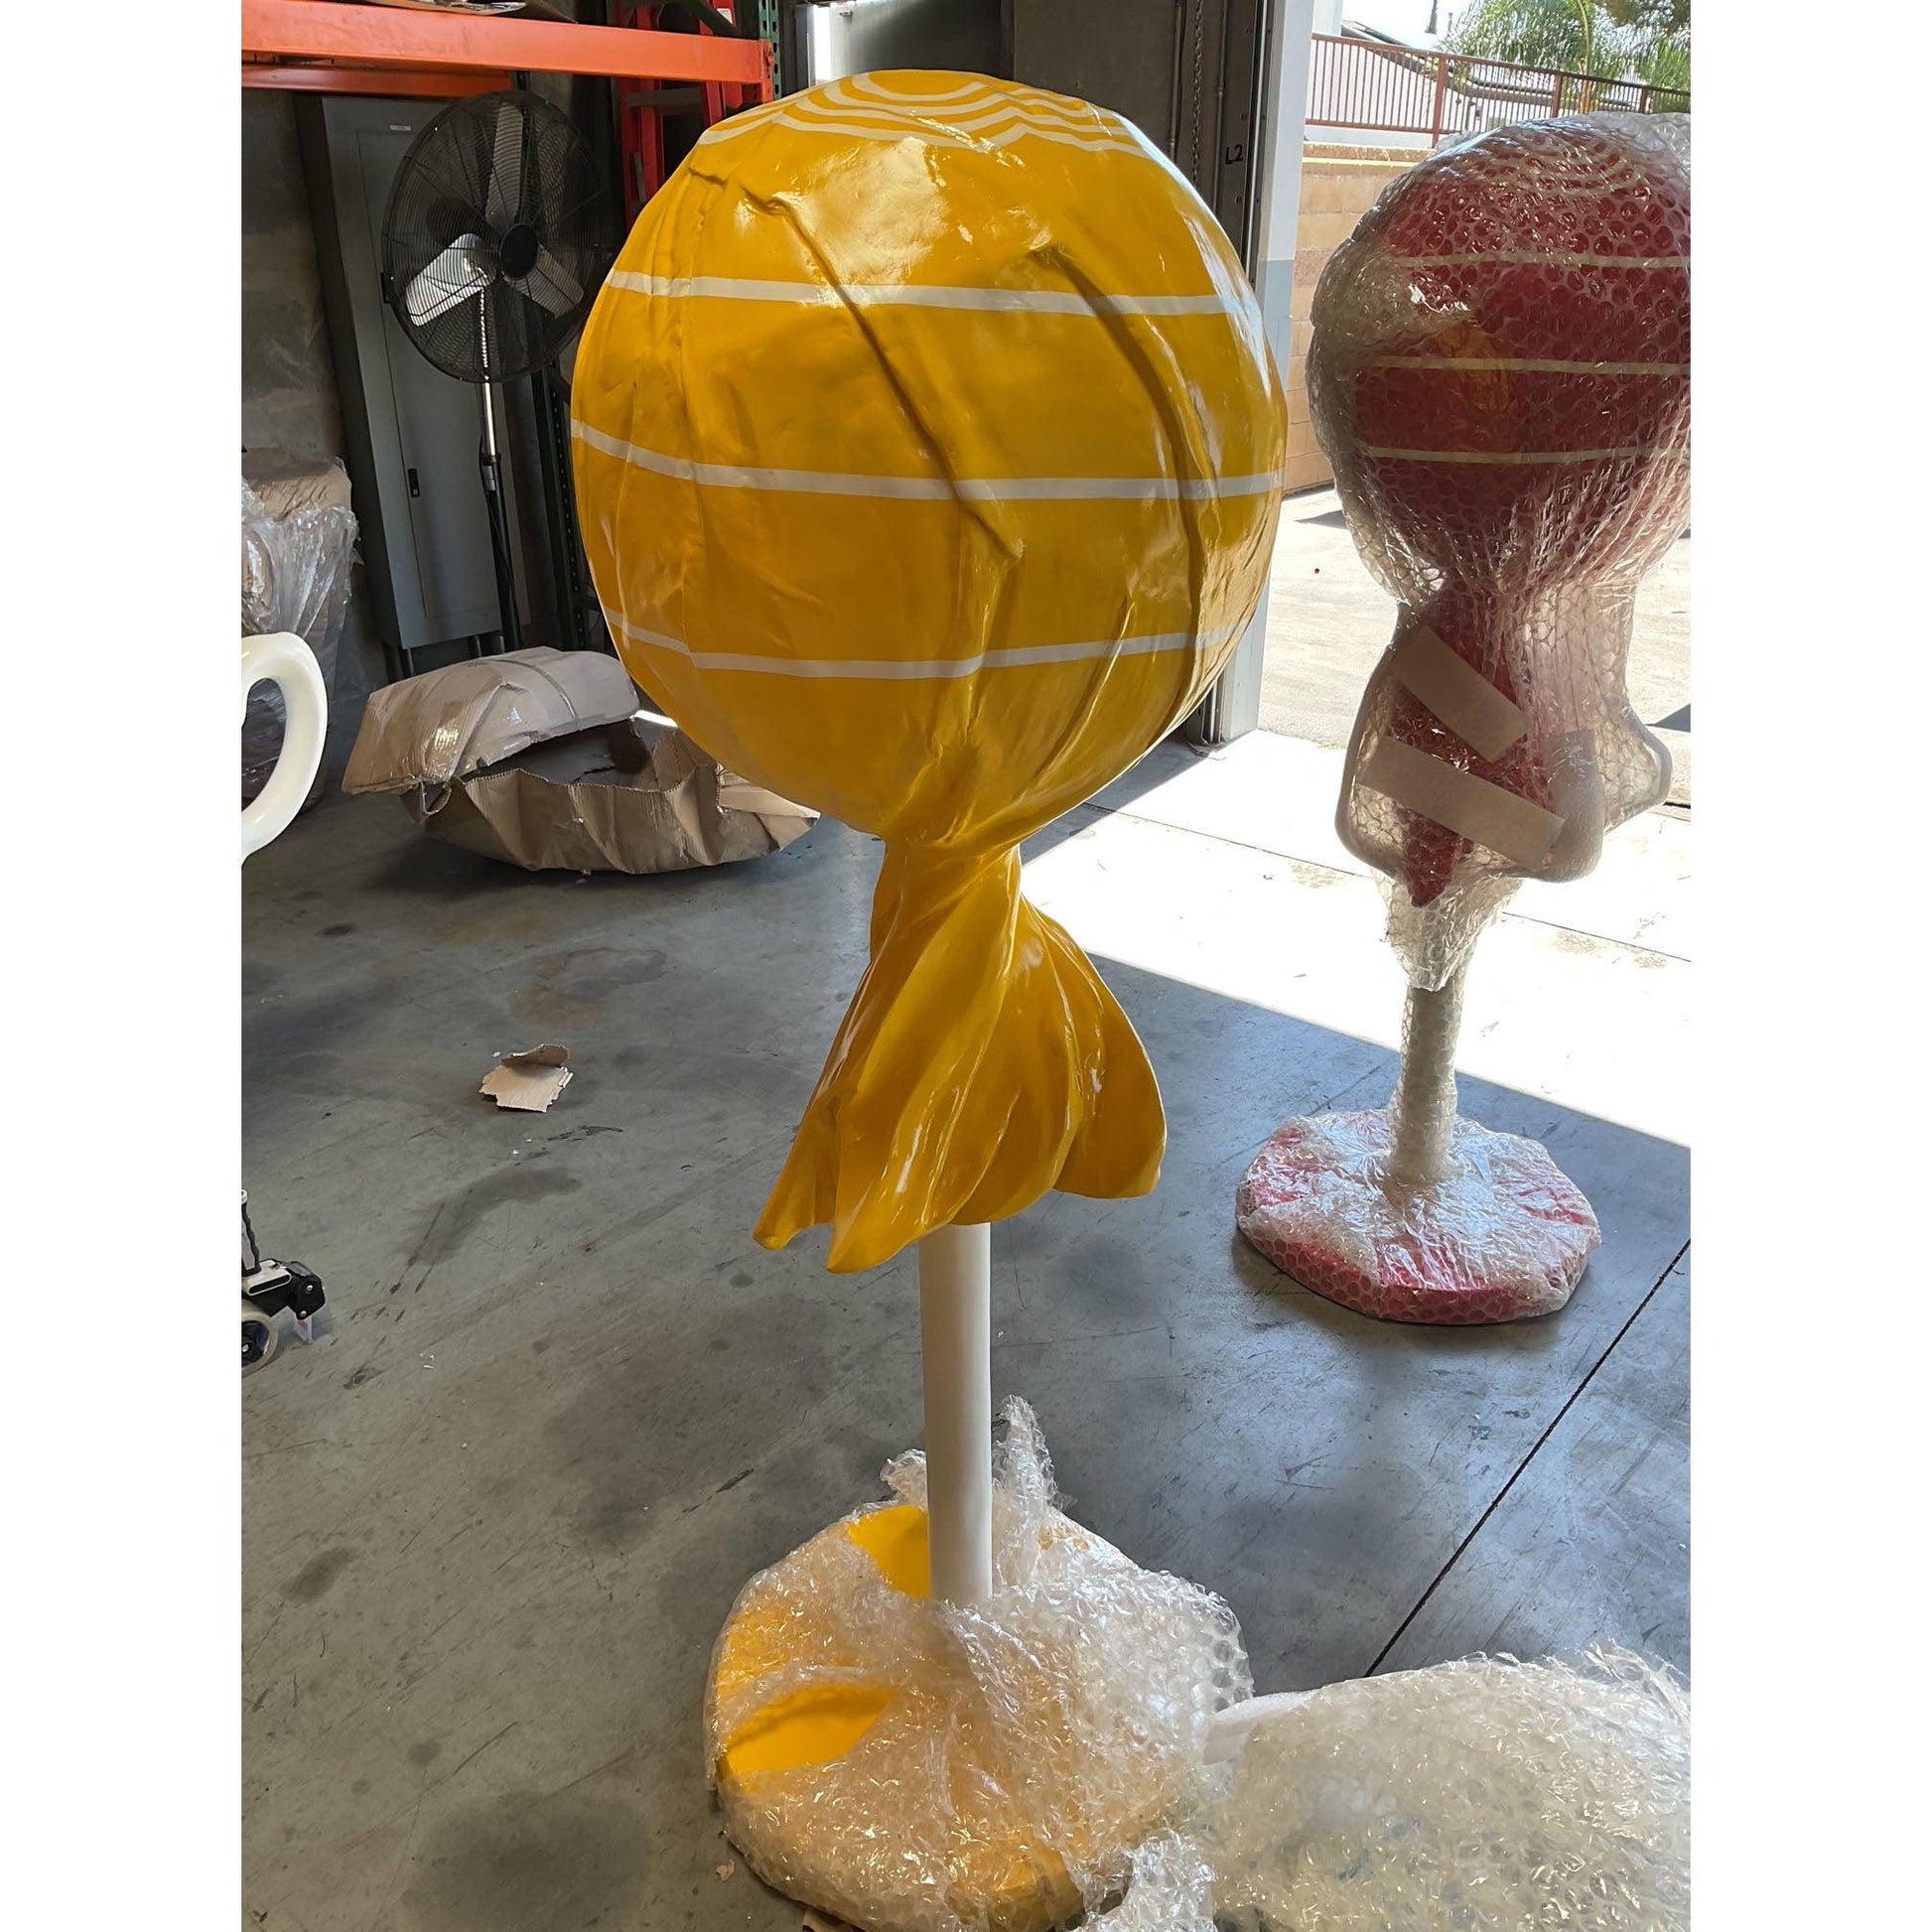 Large Yellow Lollipop Statue - LM Treasures Prop Rentals 